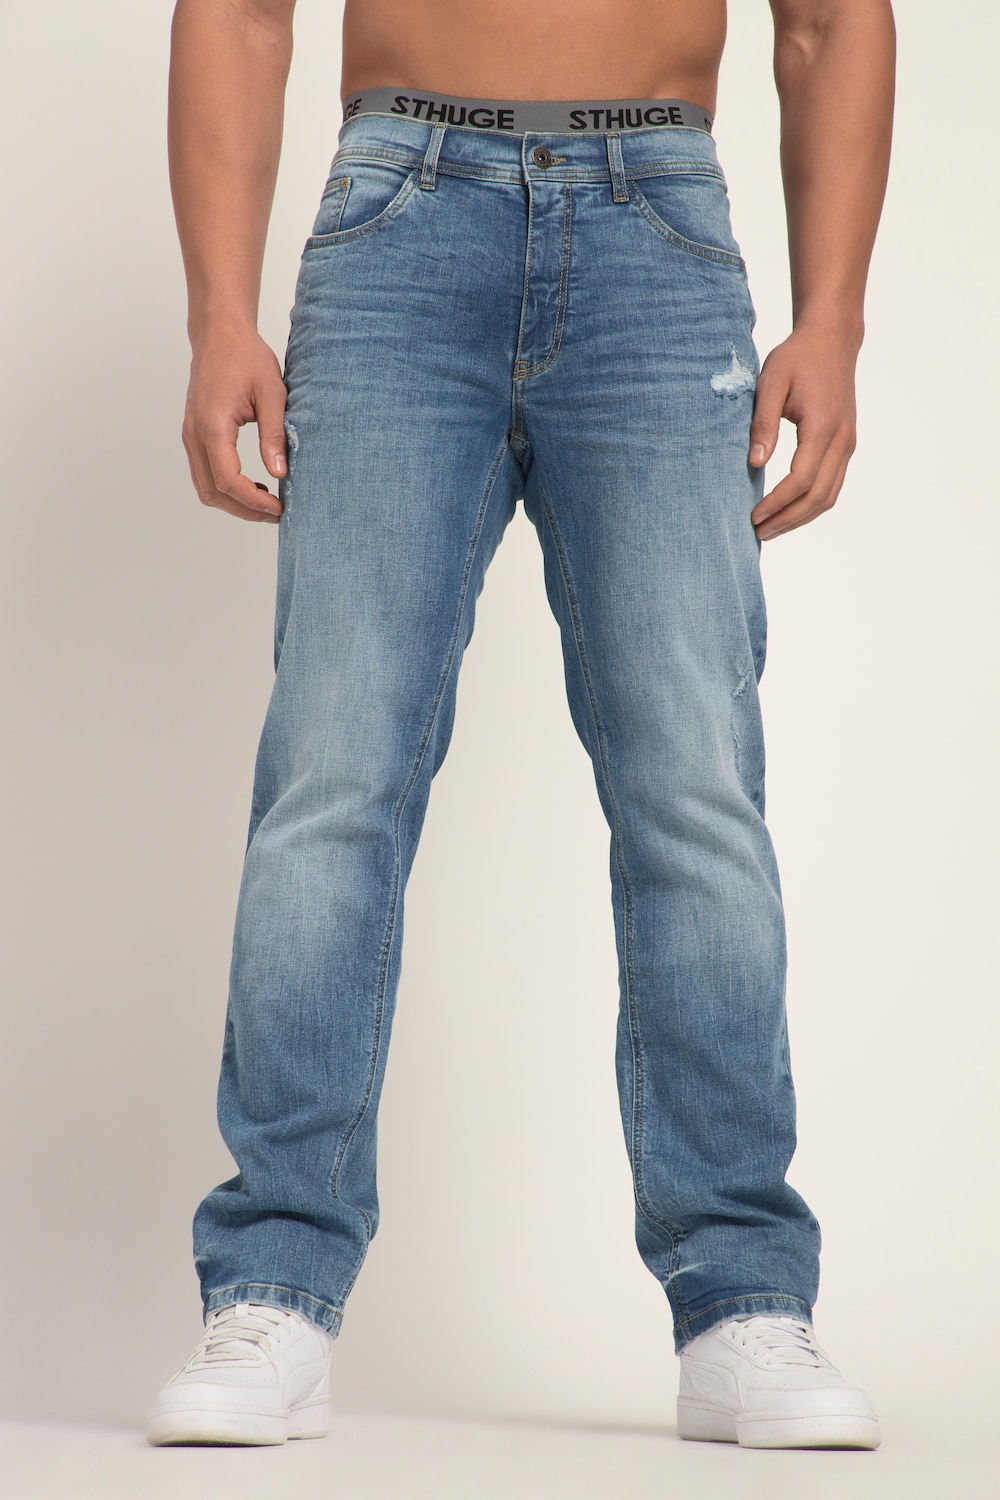 Grote Maten STHUGE Jeans FLEXLASTIC®male, blauw, Maat: 26, Katoen, STHUGE